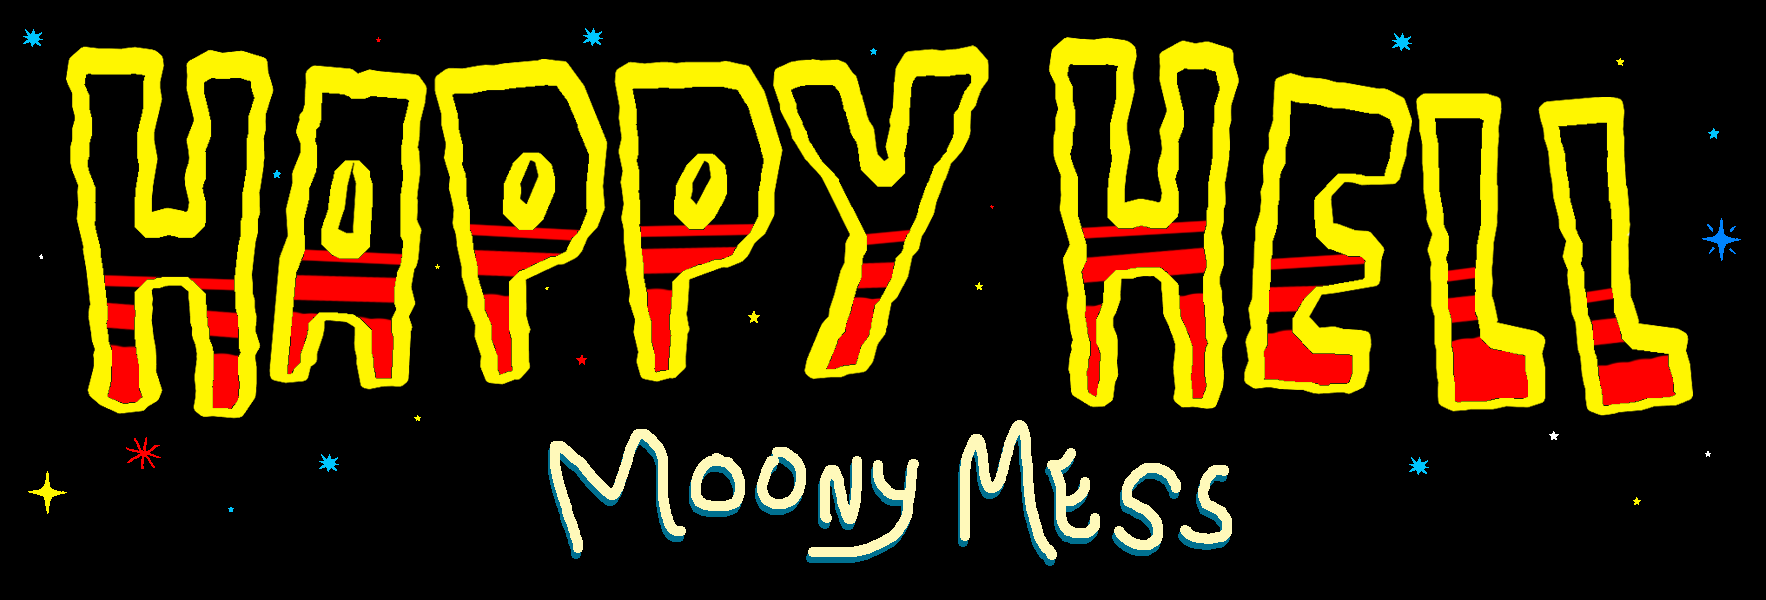 Happy Hell: Moony Mess